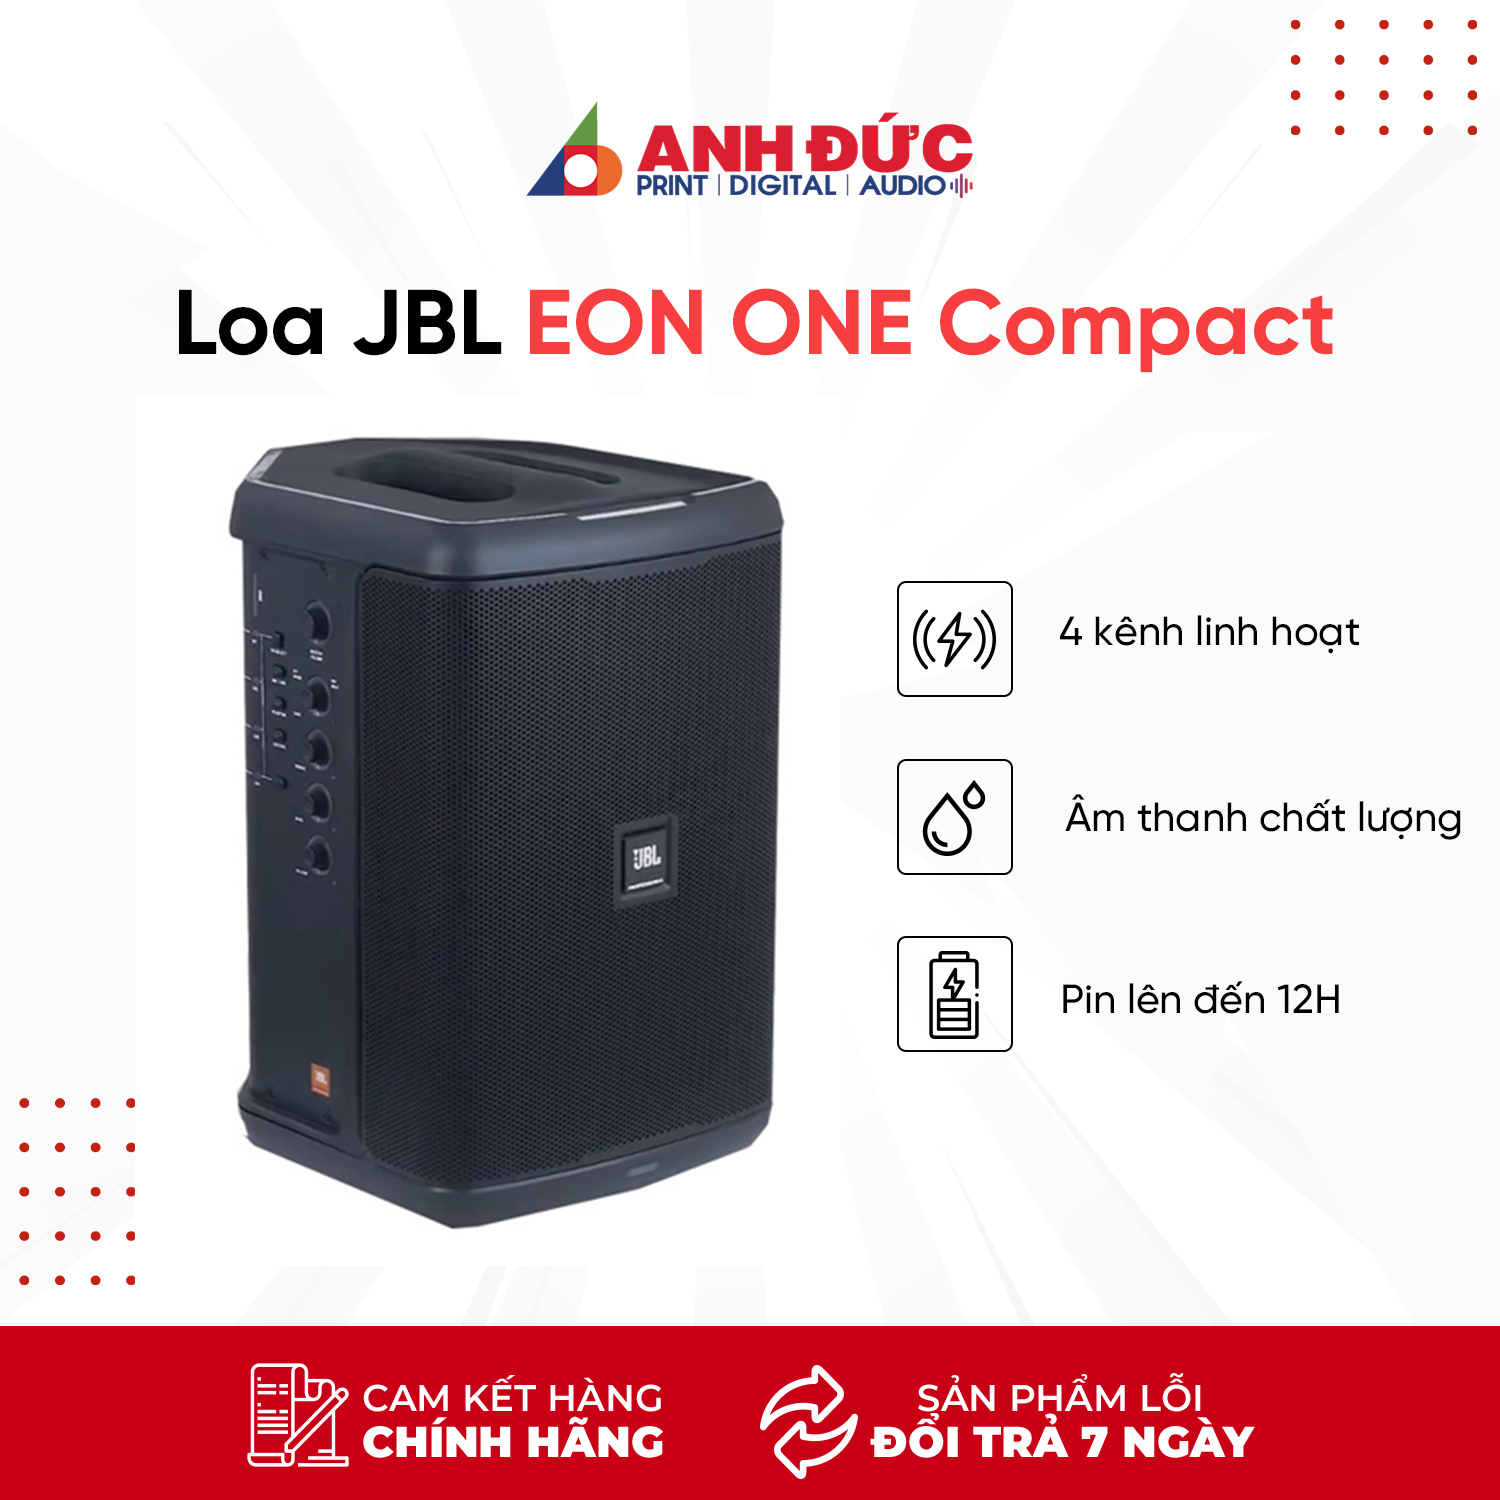 Loa JBL EON ONE Compact - Thời Gian Sử Dụng 12 Giờ - Hàng Chính Hãng PGI